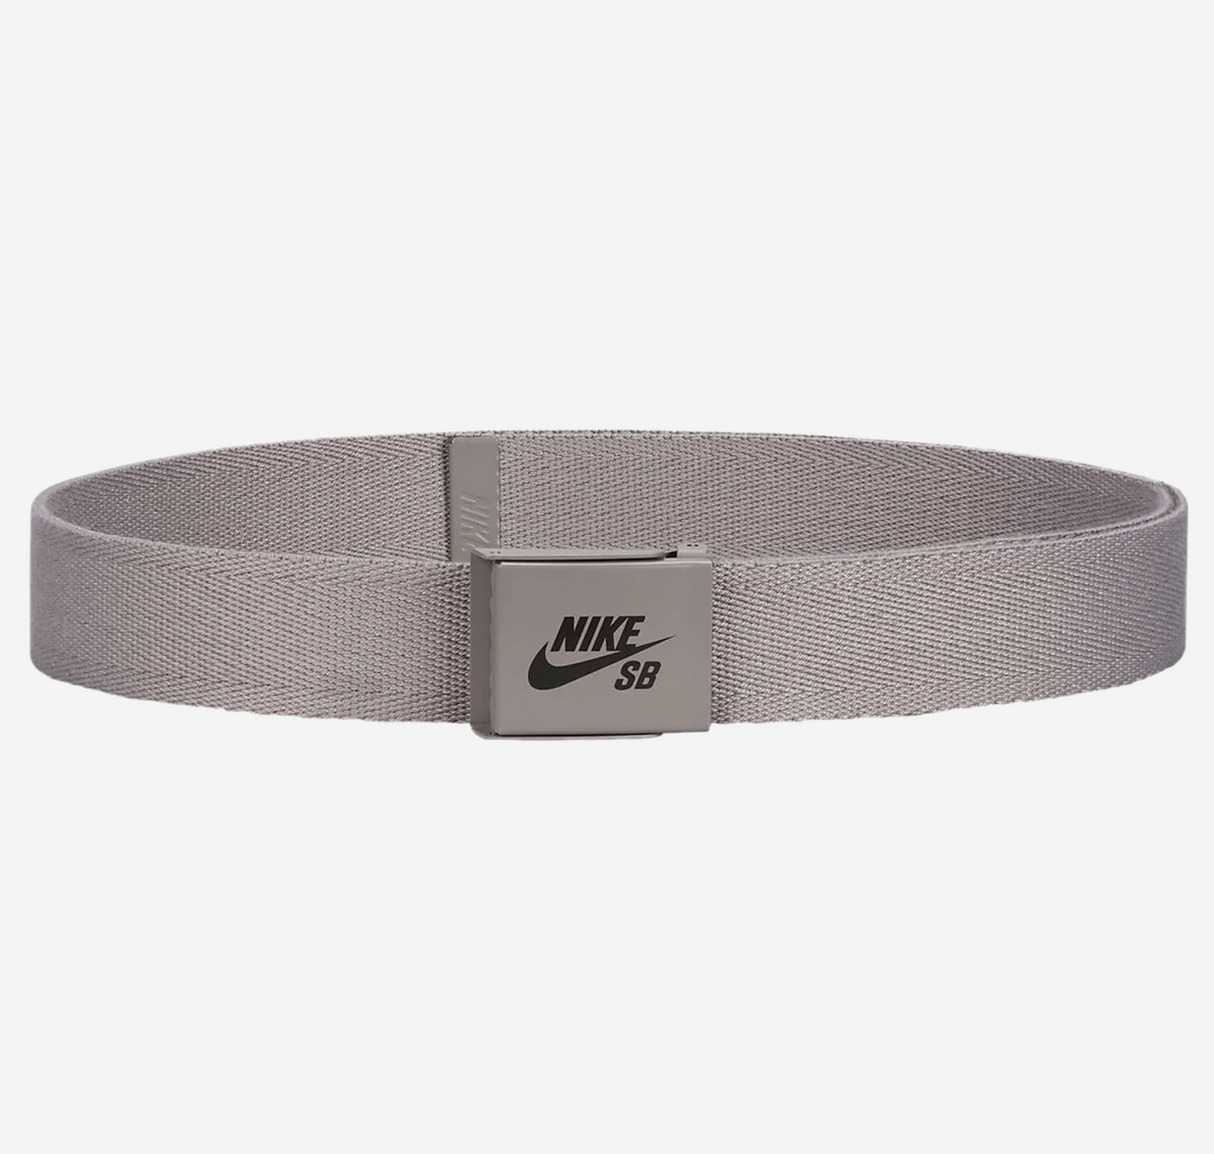 Nike SB Solid Grey Web Belt